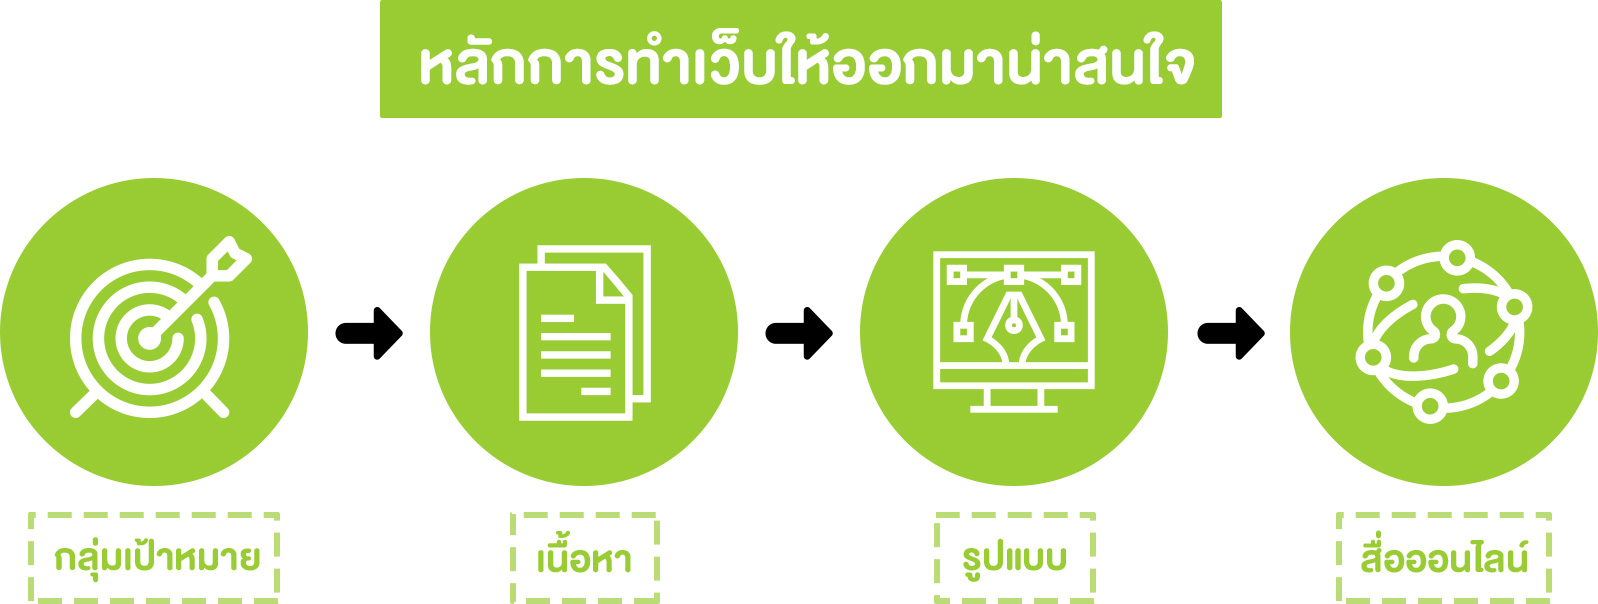 หลักการทำเว็บให้ออกมาน่าสนใจ - Startup Thailand